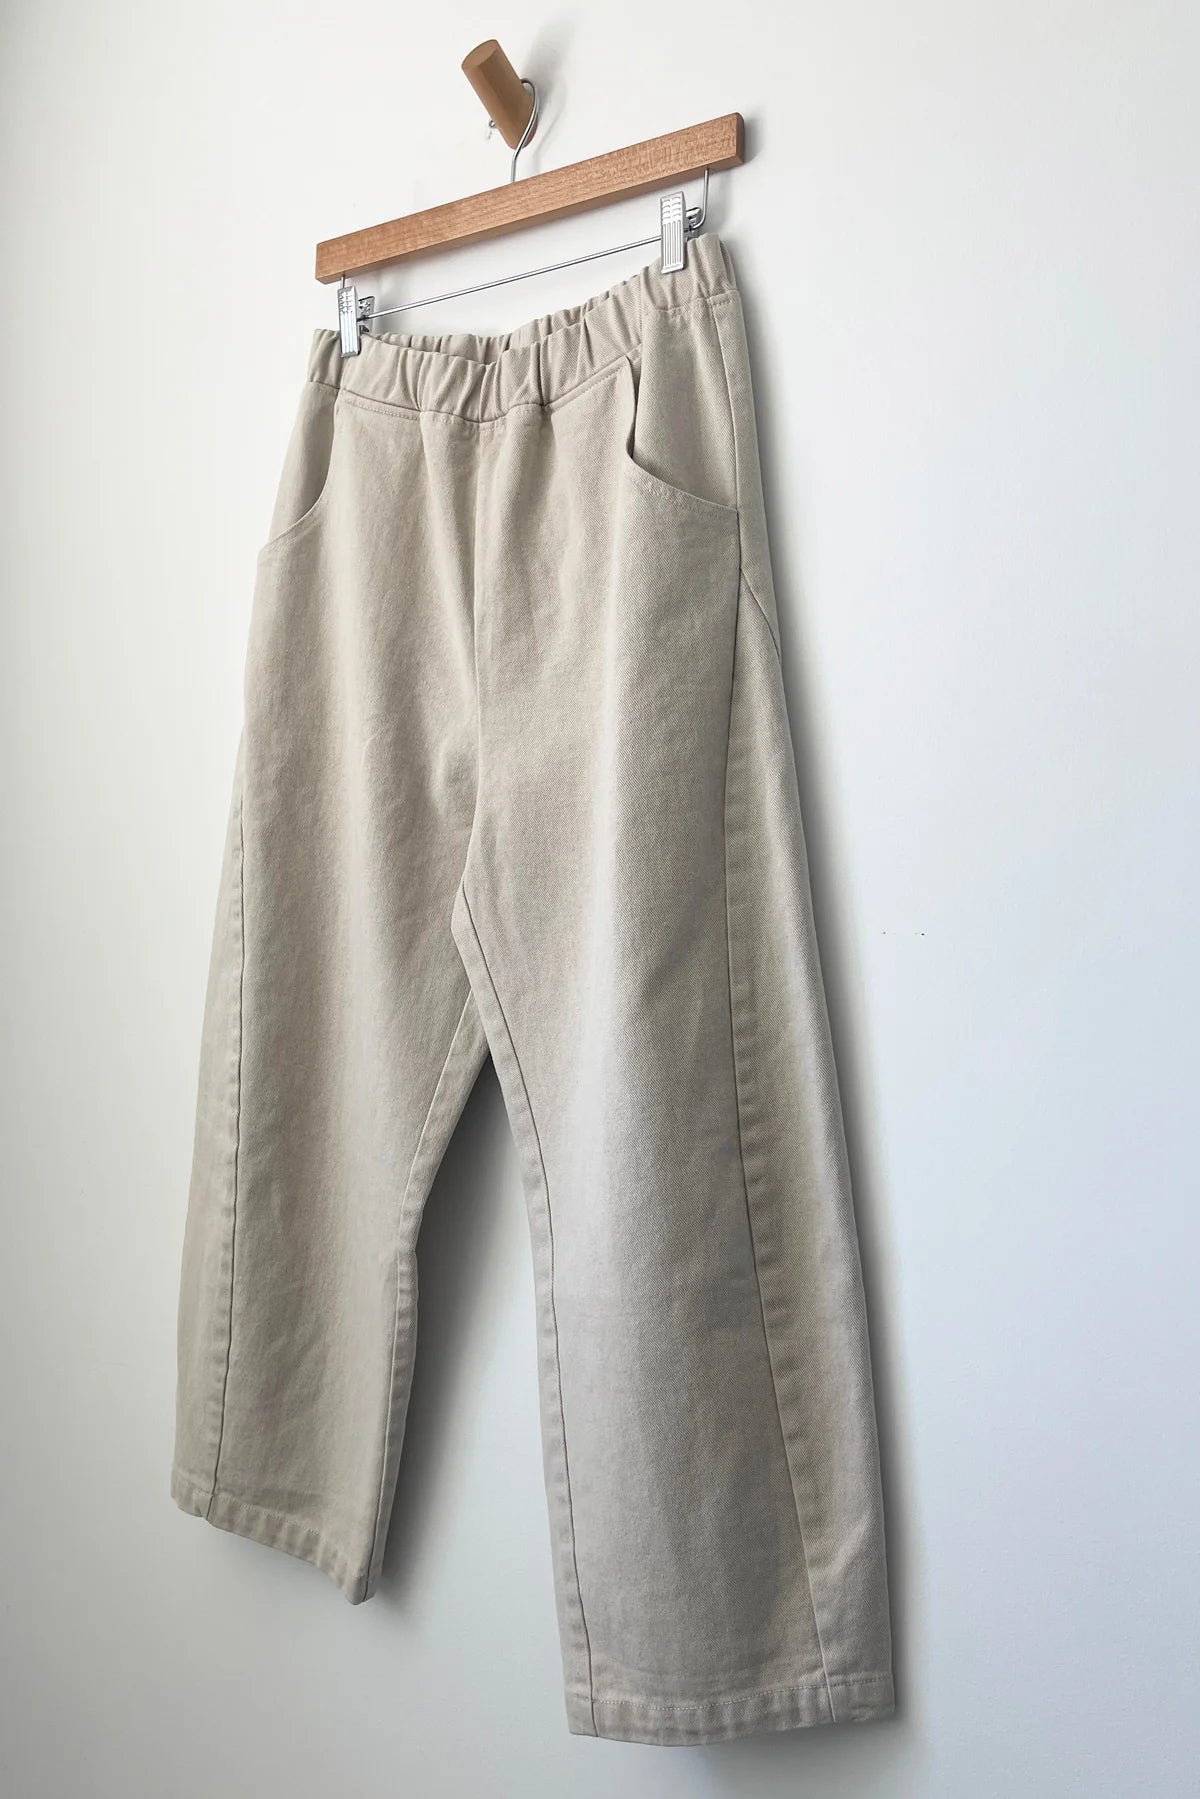 Le Bon Shoppe Arc Pants in NATURAL - ( select size )